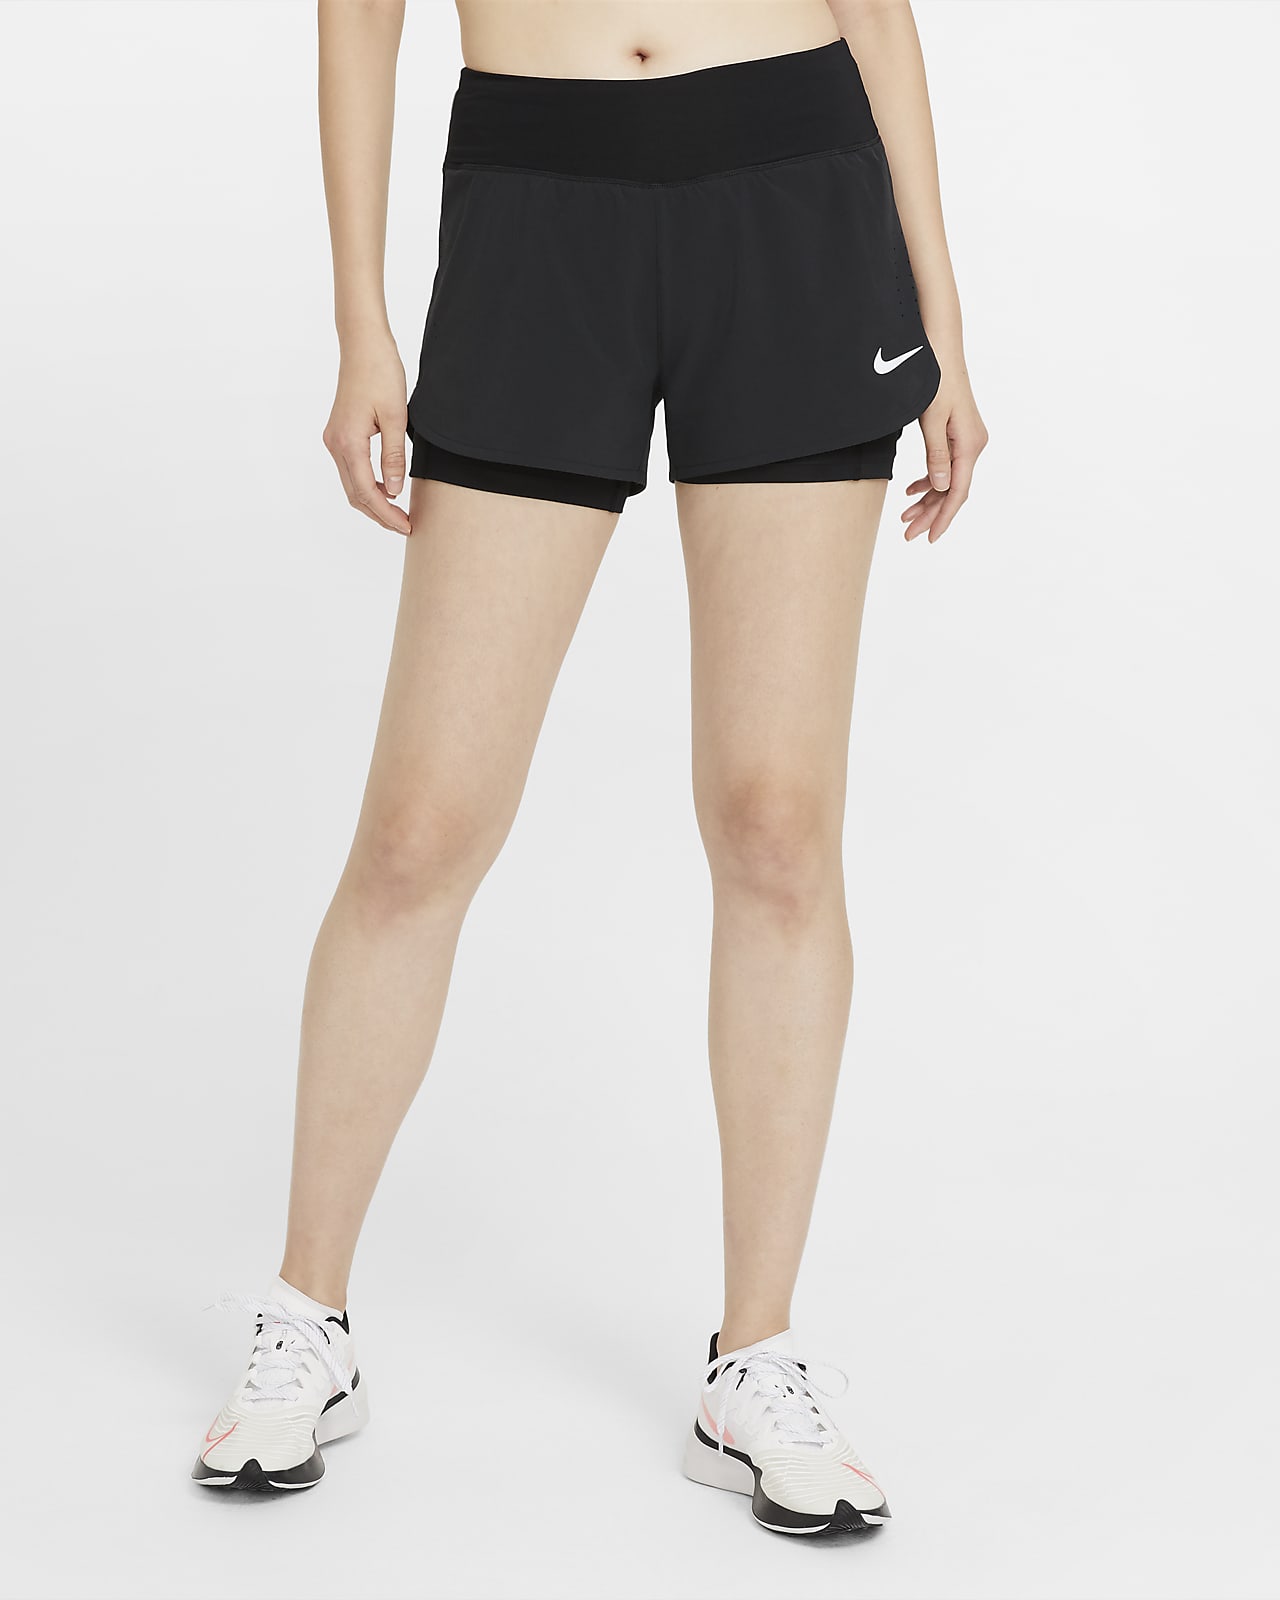 Nike Eclipse 2 i 1-løbeshorts til kvinder